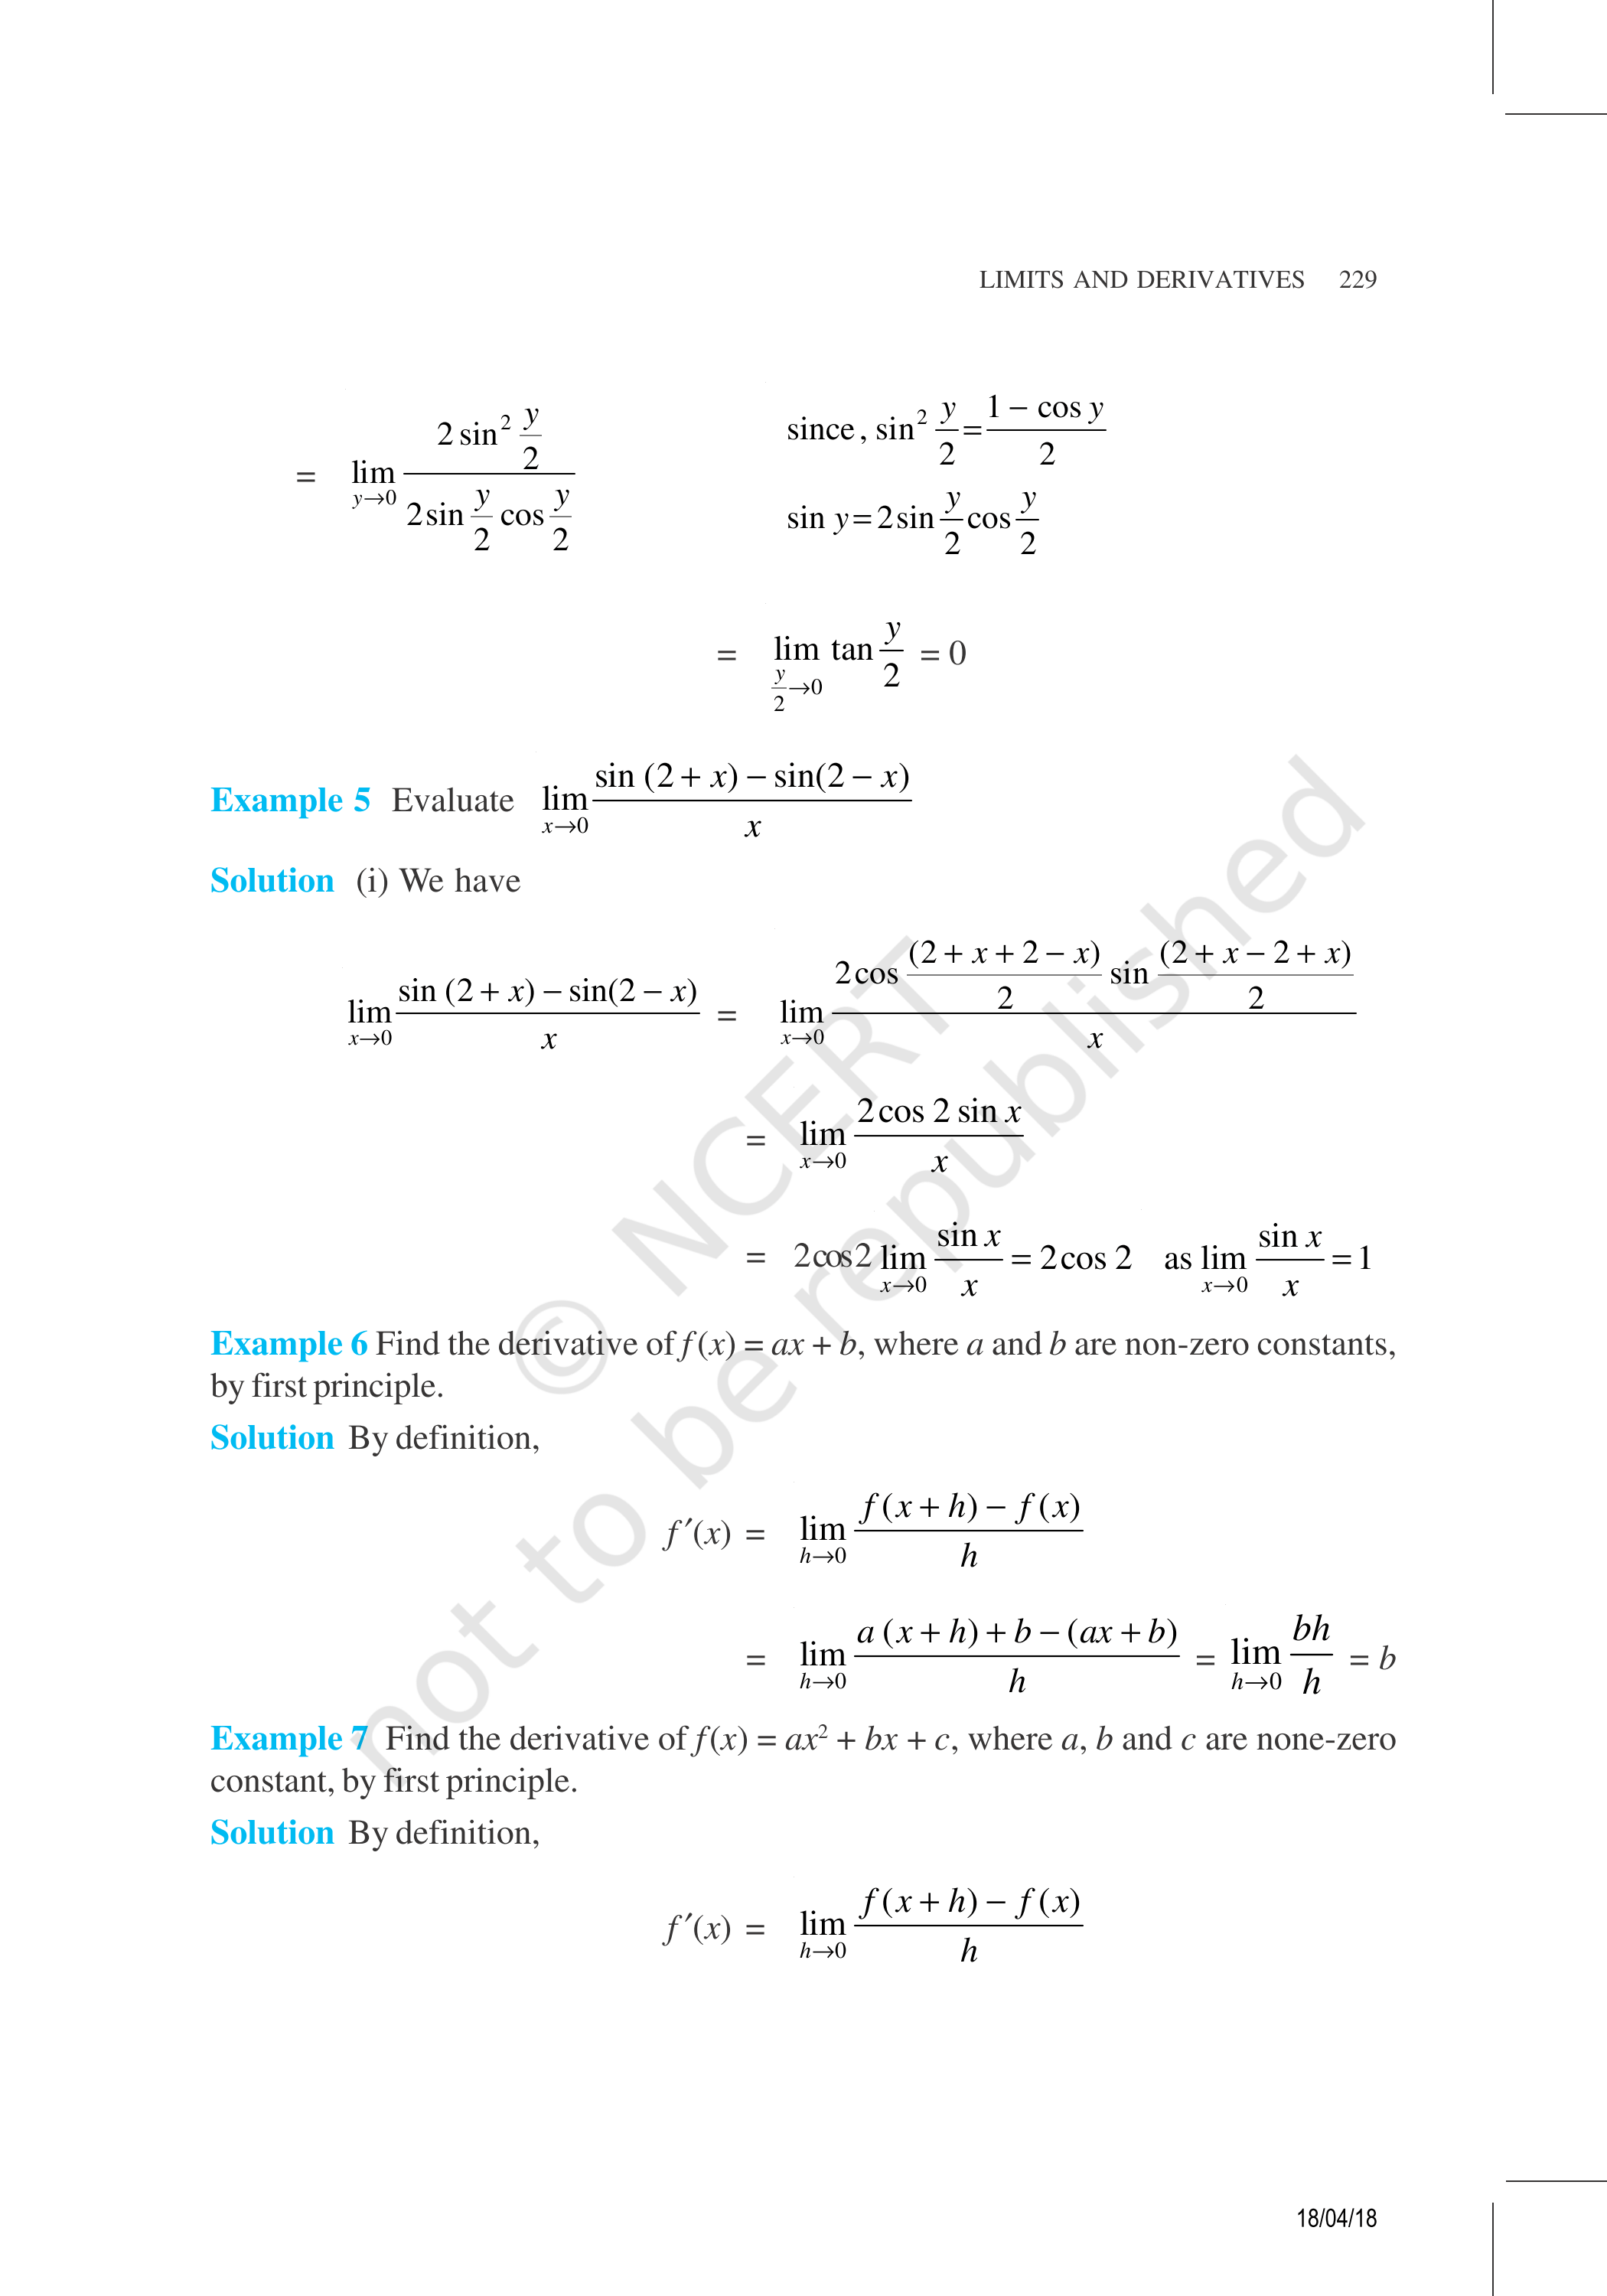 NCERT Exemplar Class 11 Maths Chapter 13 Image 5